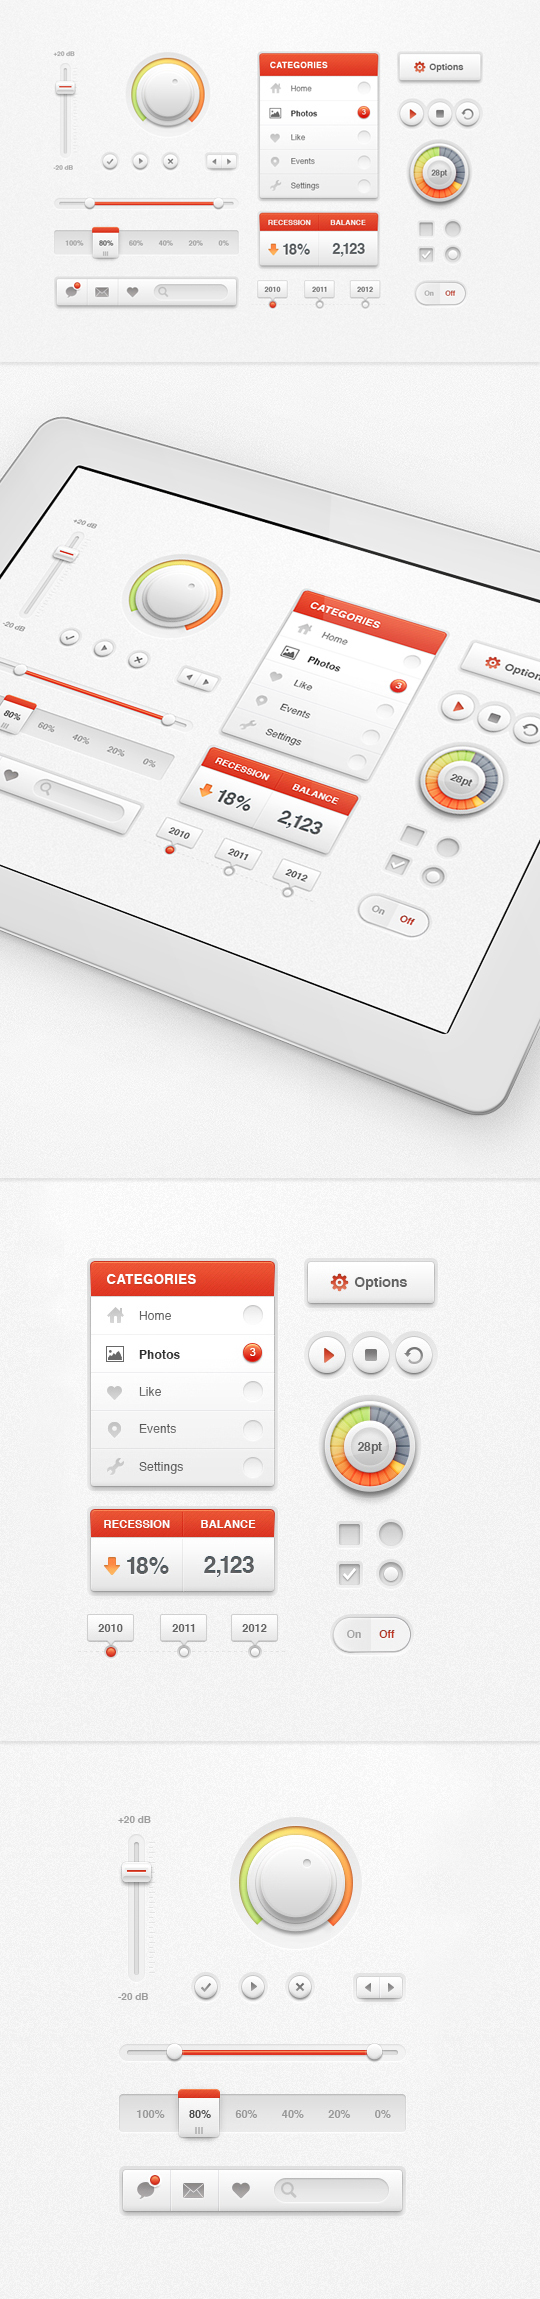 Portfolio 2012-2013 | UI Concepts